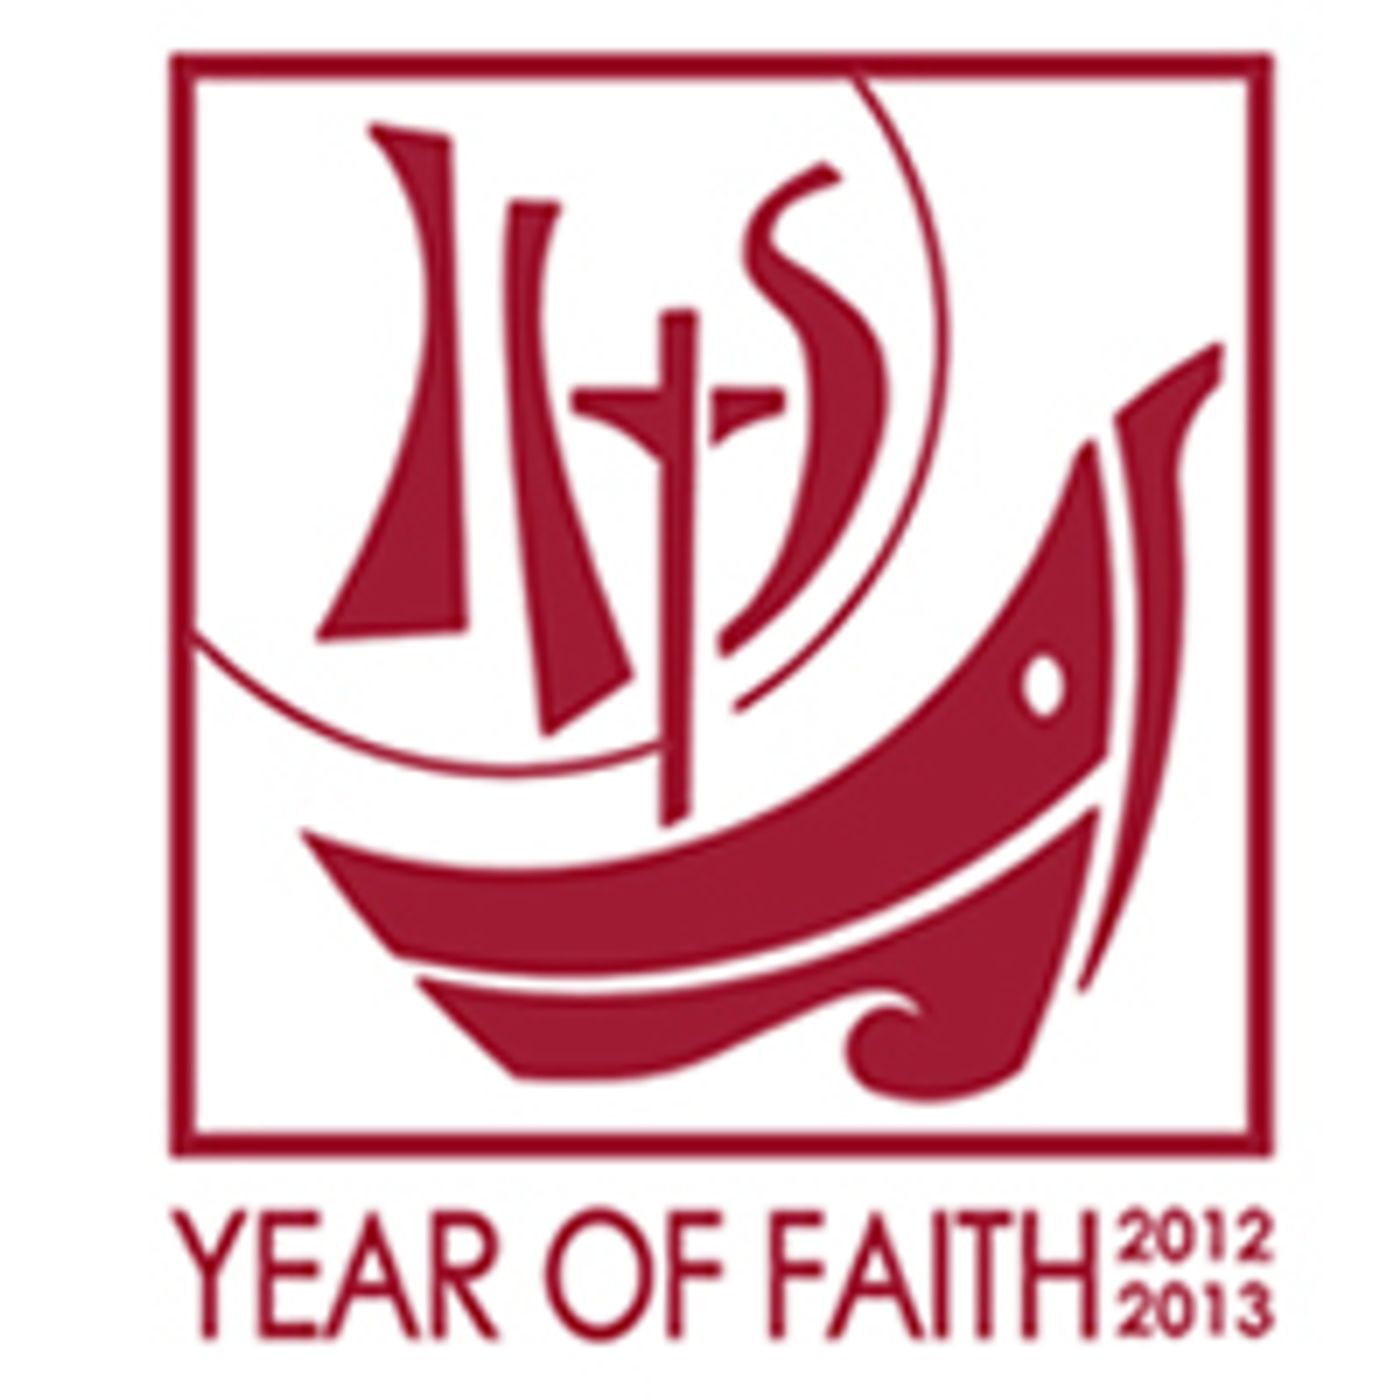 Year of Faith